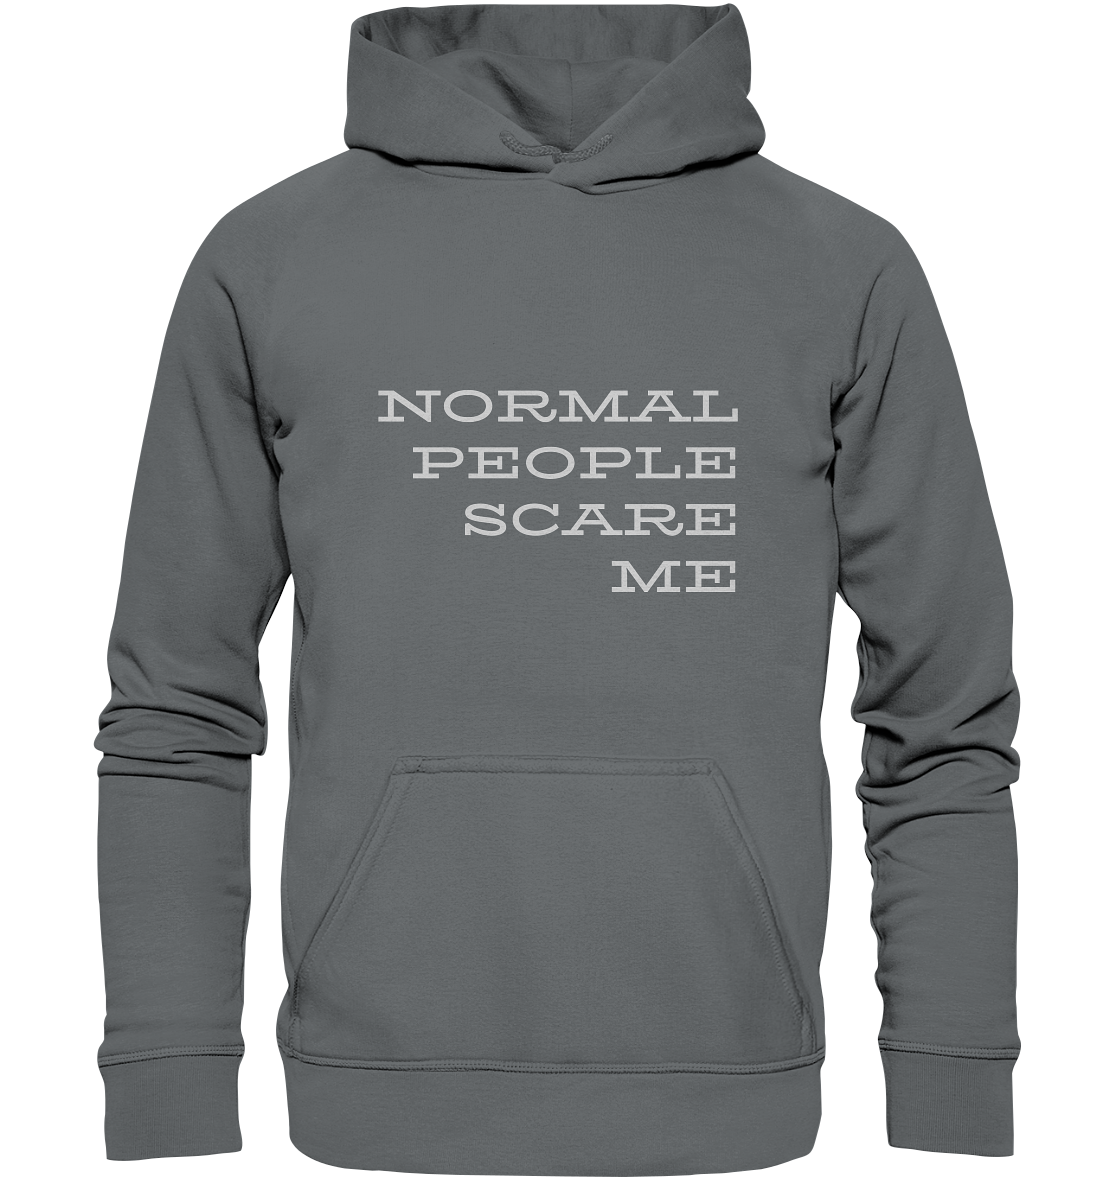 Hoodie mit Aufdruck "Normal people scare me", grau